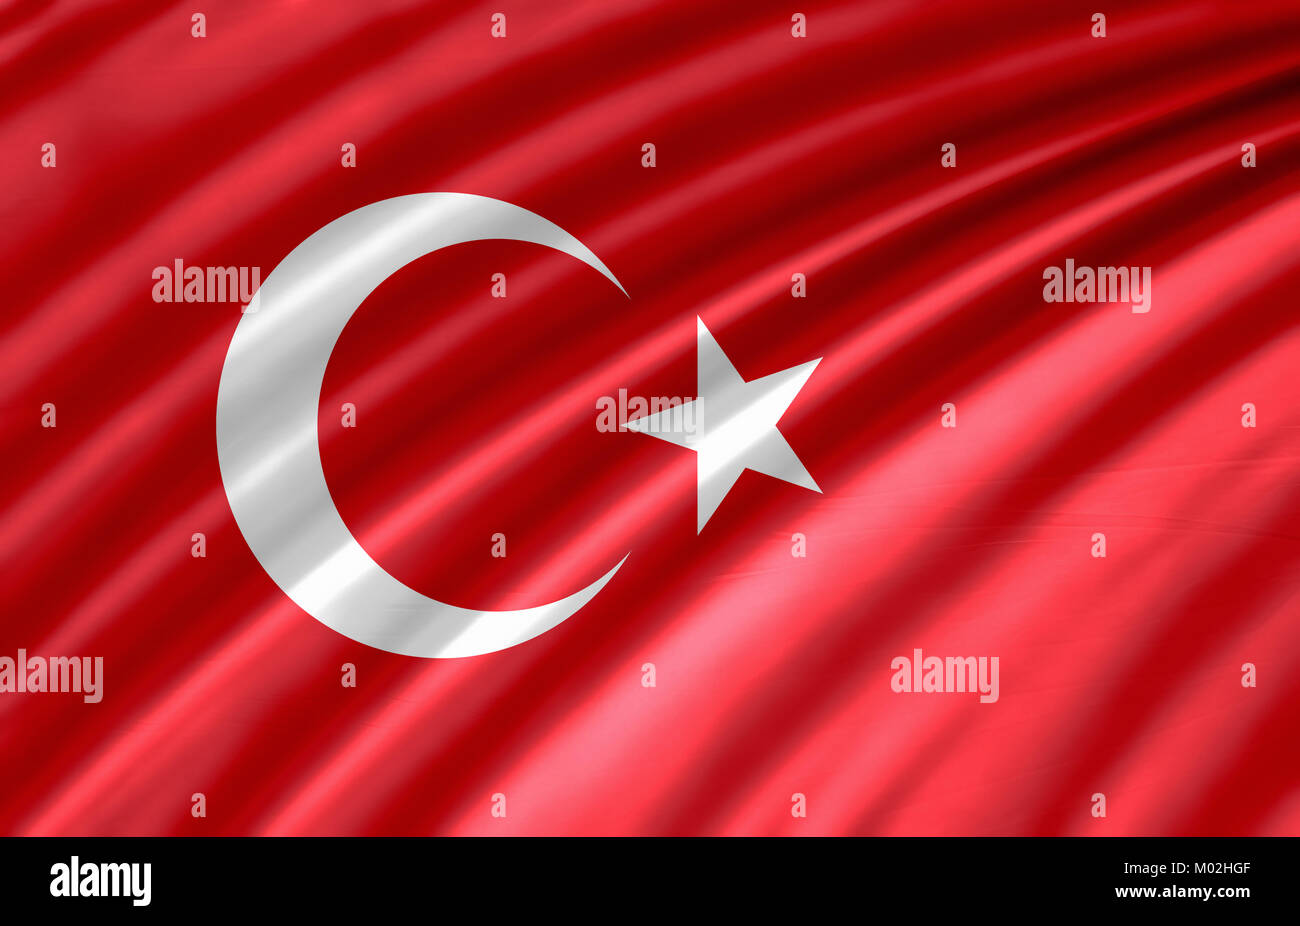 Brandissant le drapeau turc coloré Banque D'Images